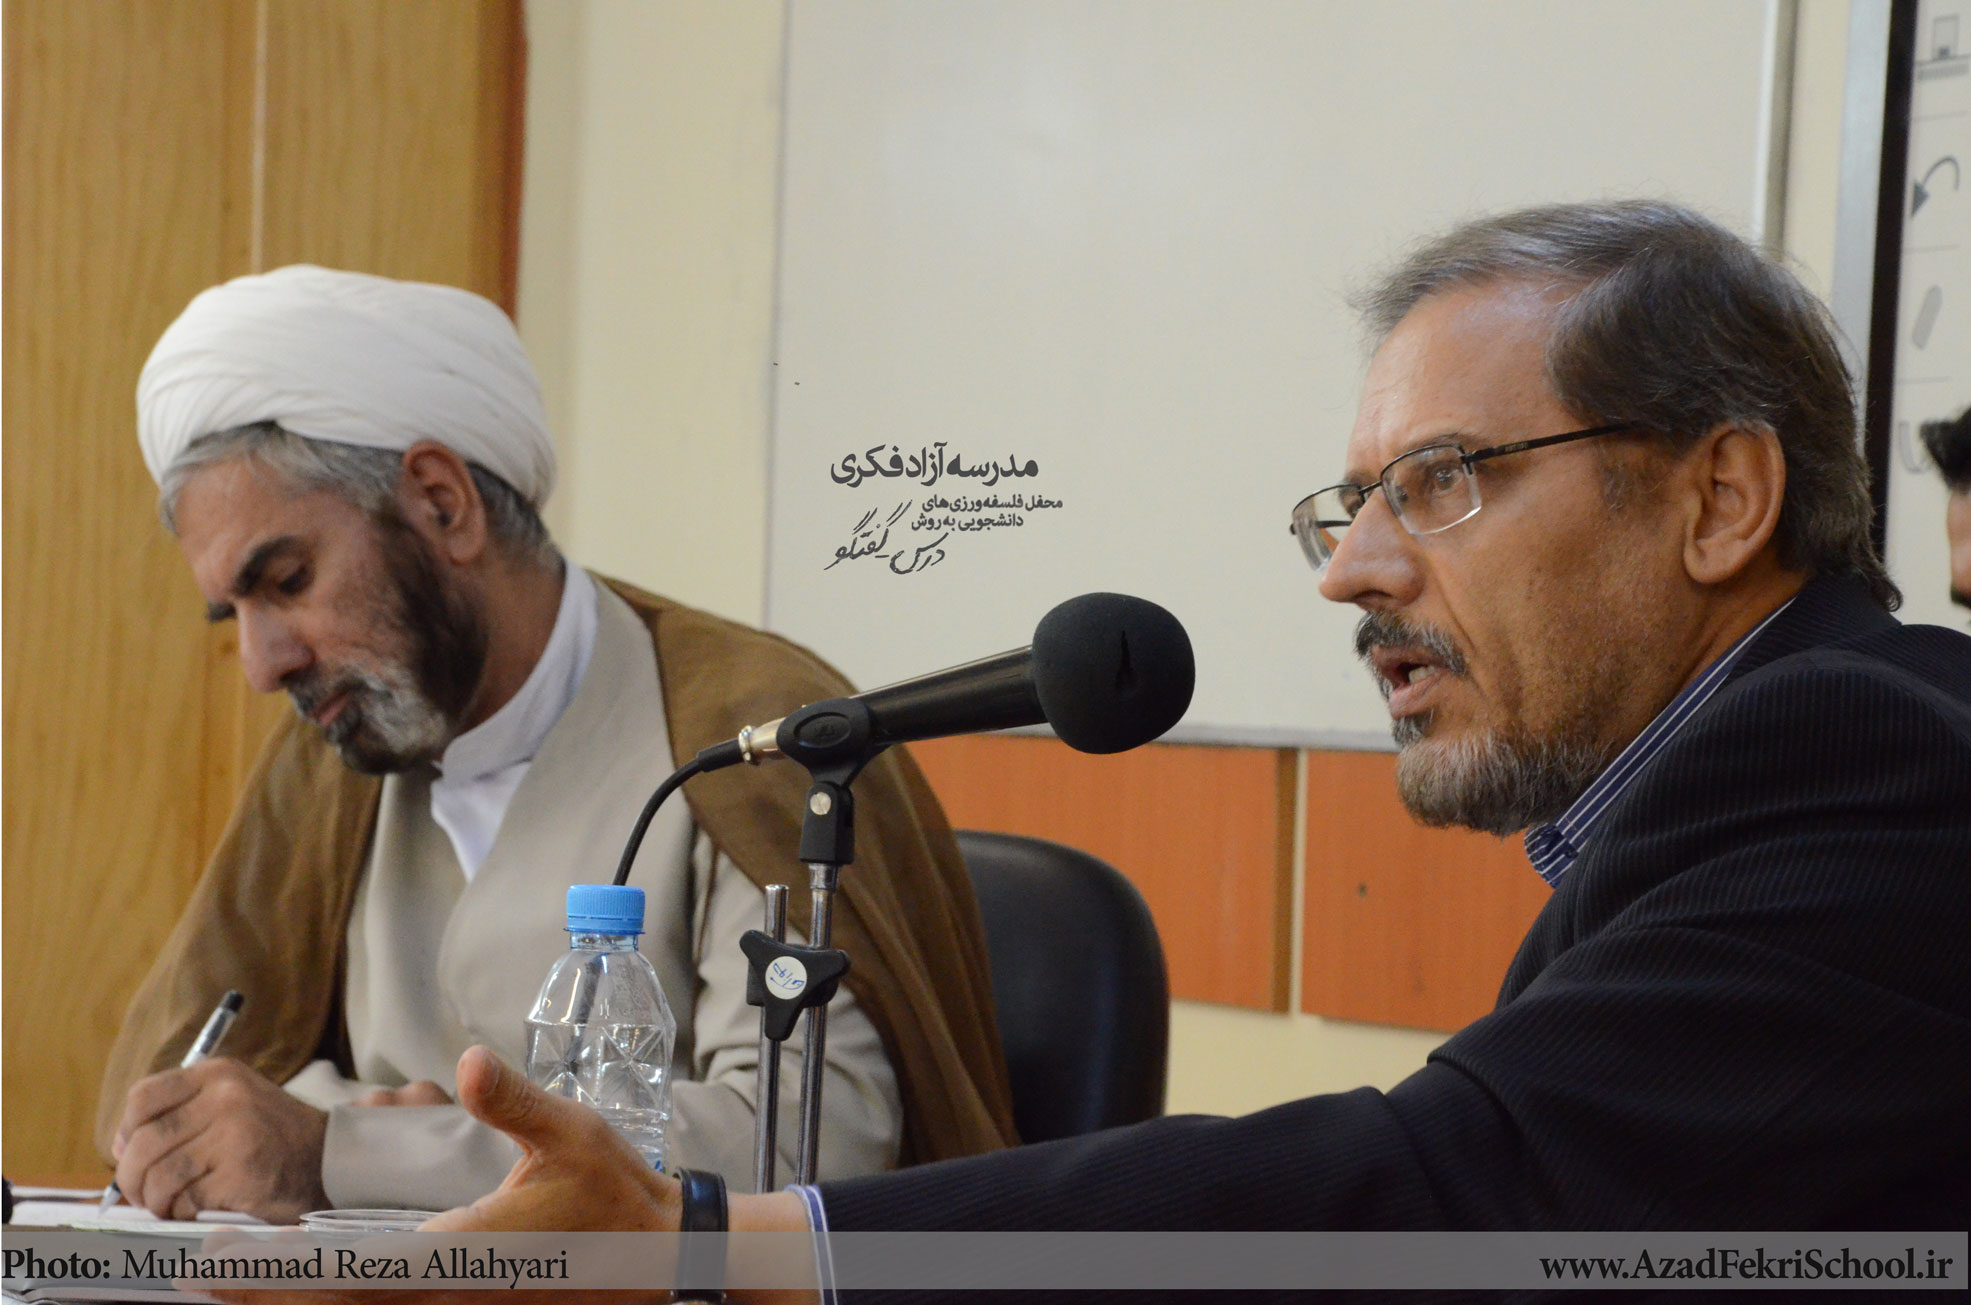 برگزاری جلسه گفتگوی علم دینی با حضور حجت الاسلام پیروزمند و دکتر باقری